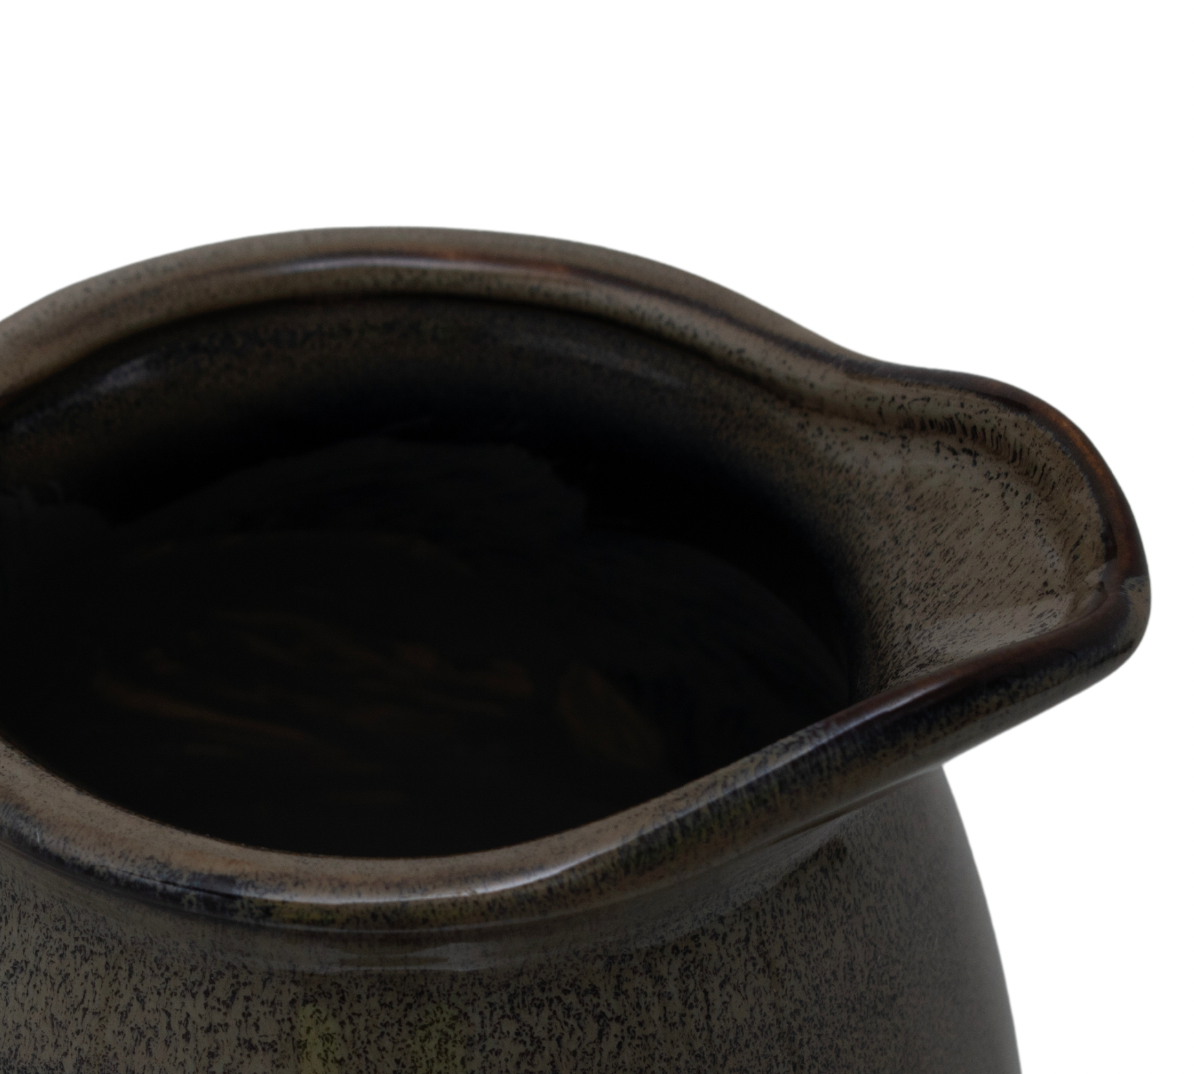 Olive Olpe Vase - Medium